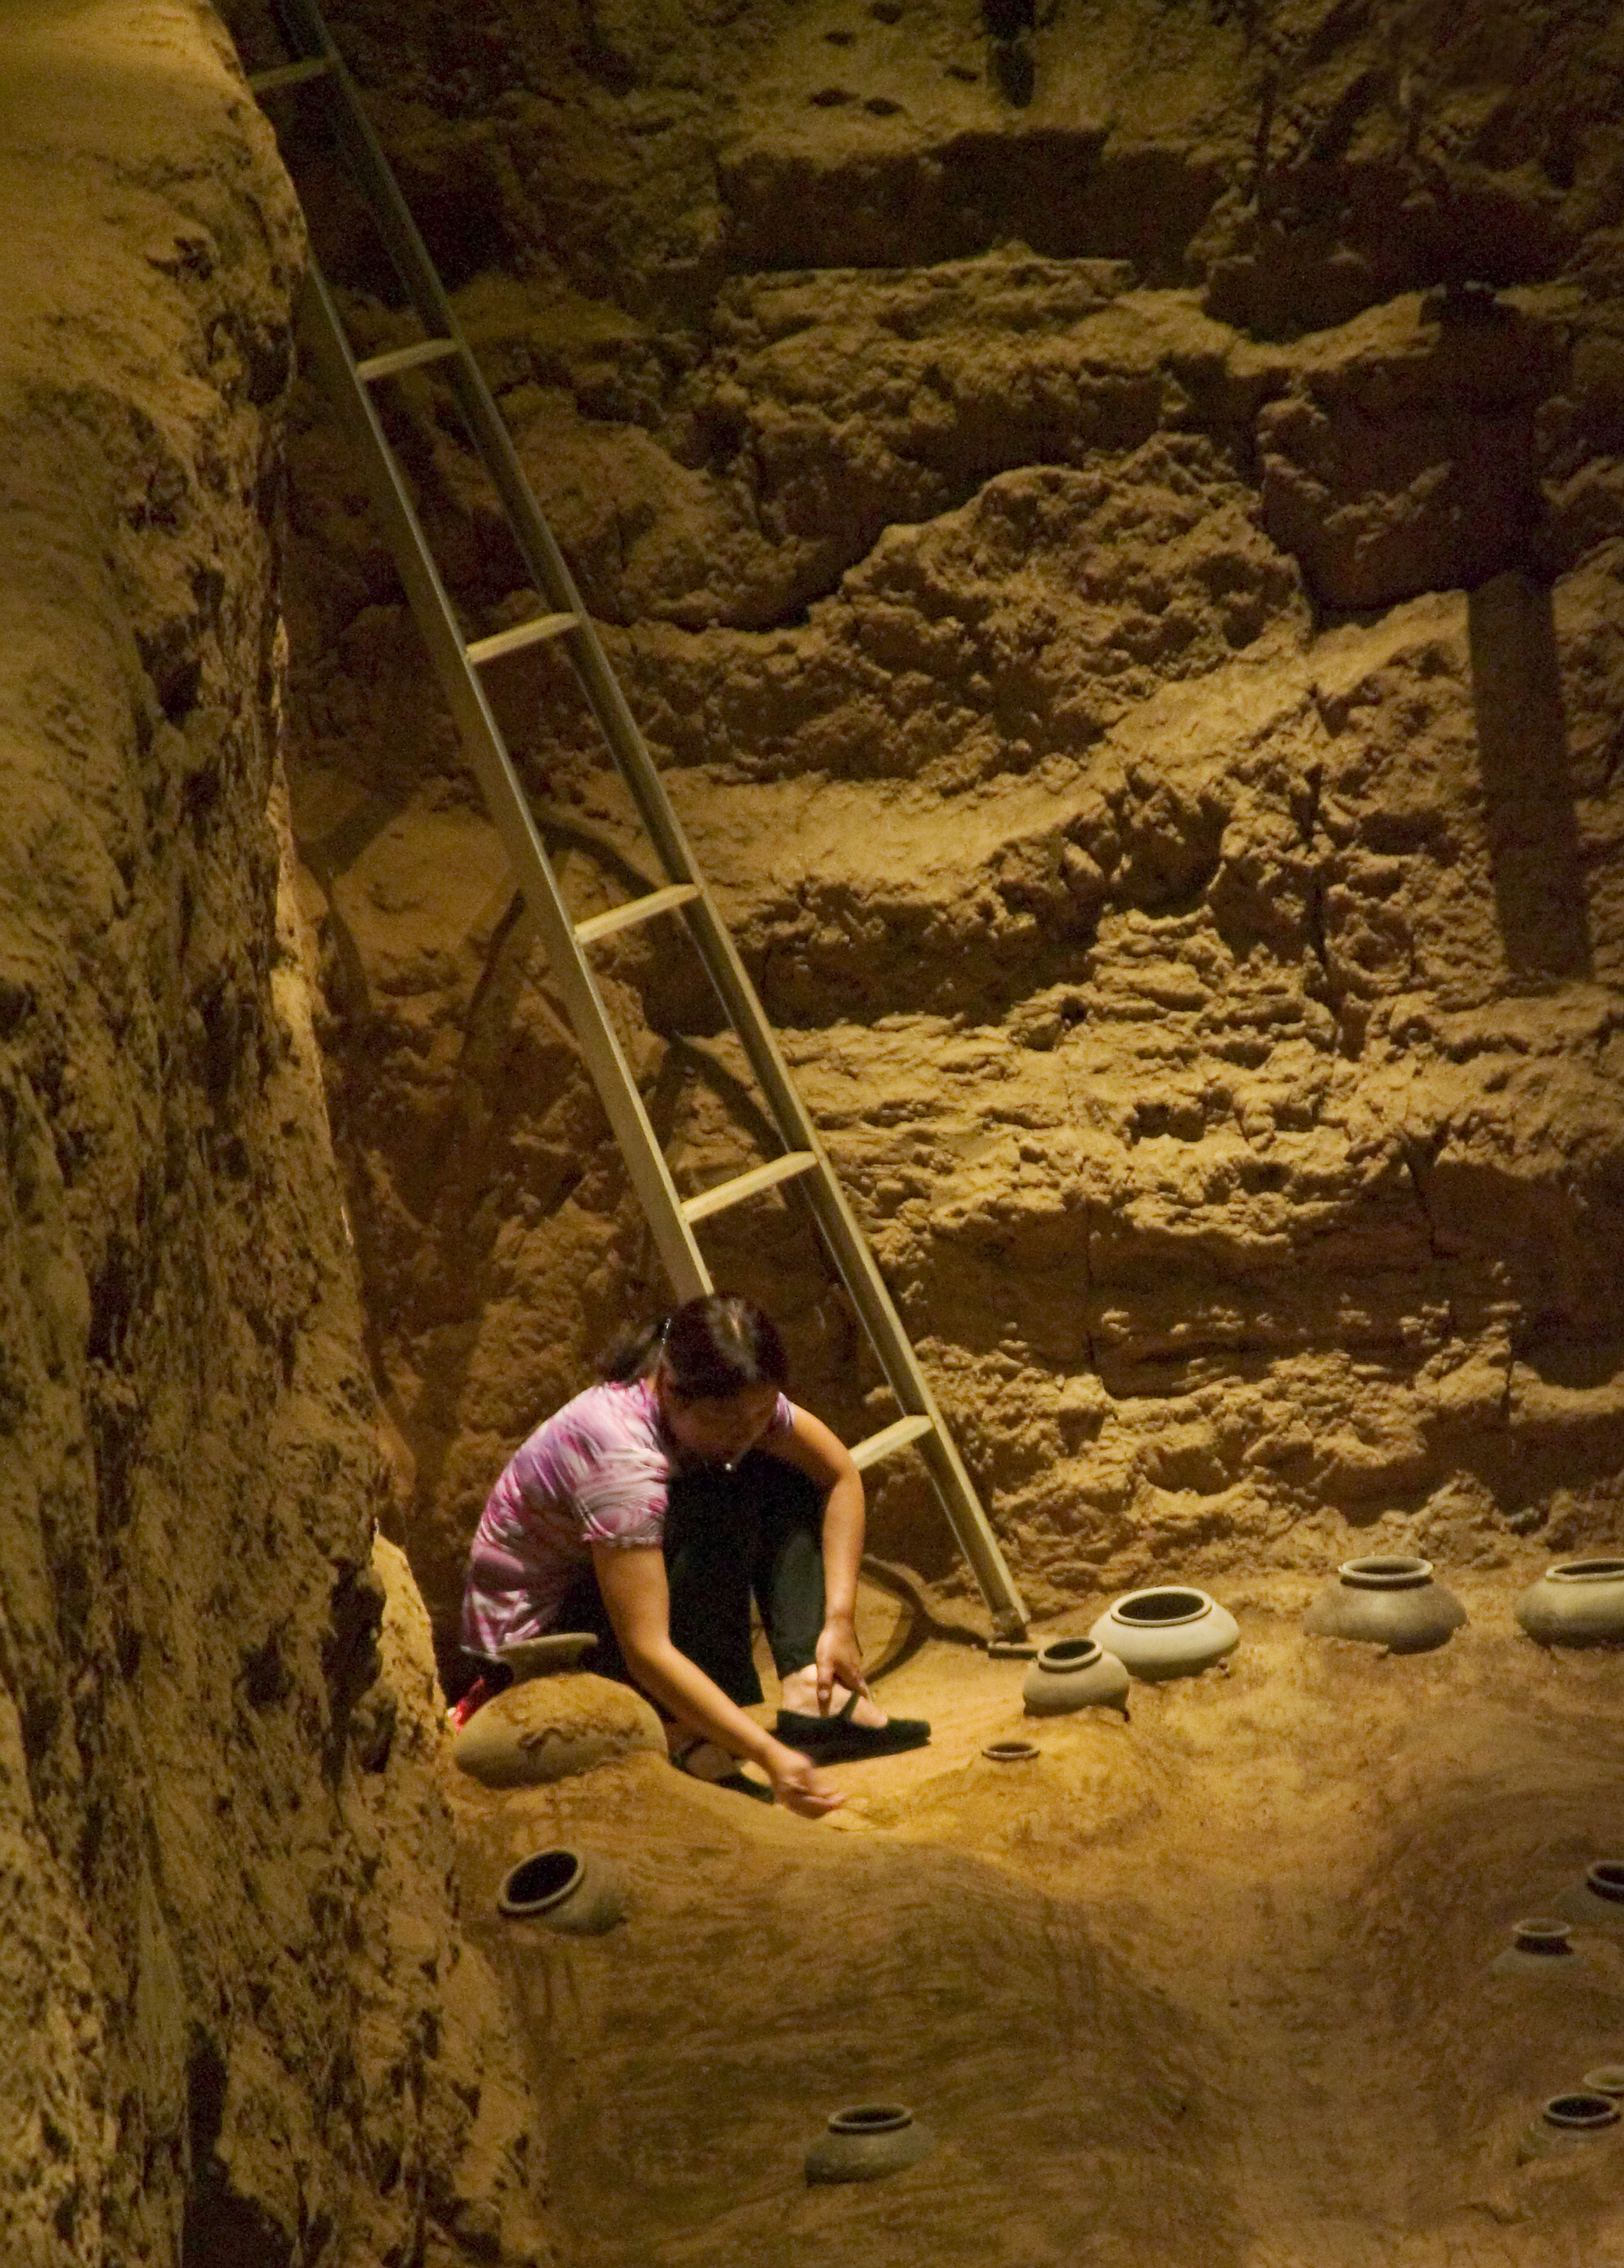 Ramasitele unui copil decedat in urma cu 3.500 de ani indica faptul ca acesta a murit de foame